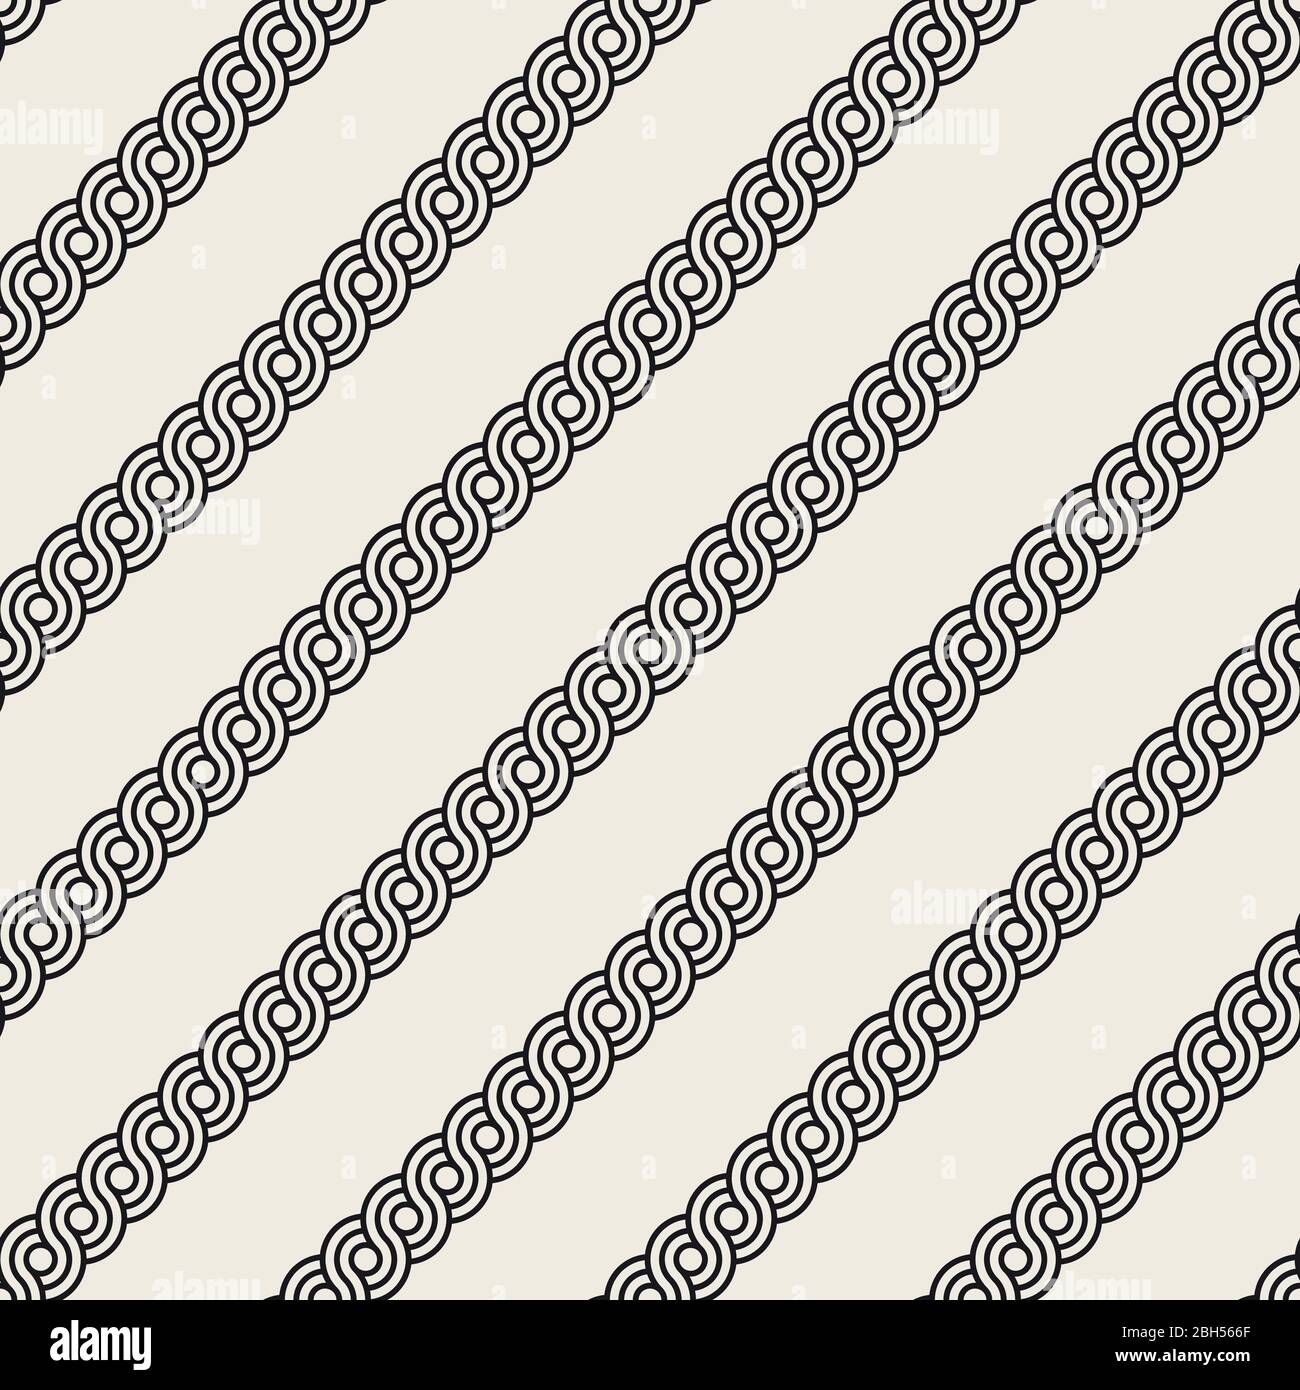 Vektor nahtlose interlacing Linien Muster. Modernes, stilvolles Abstrakt Hintergrund. Wiederkehrende geometrische Streifen Design. Stock Vektor